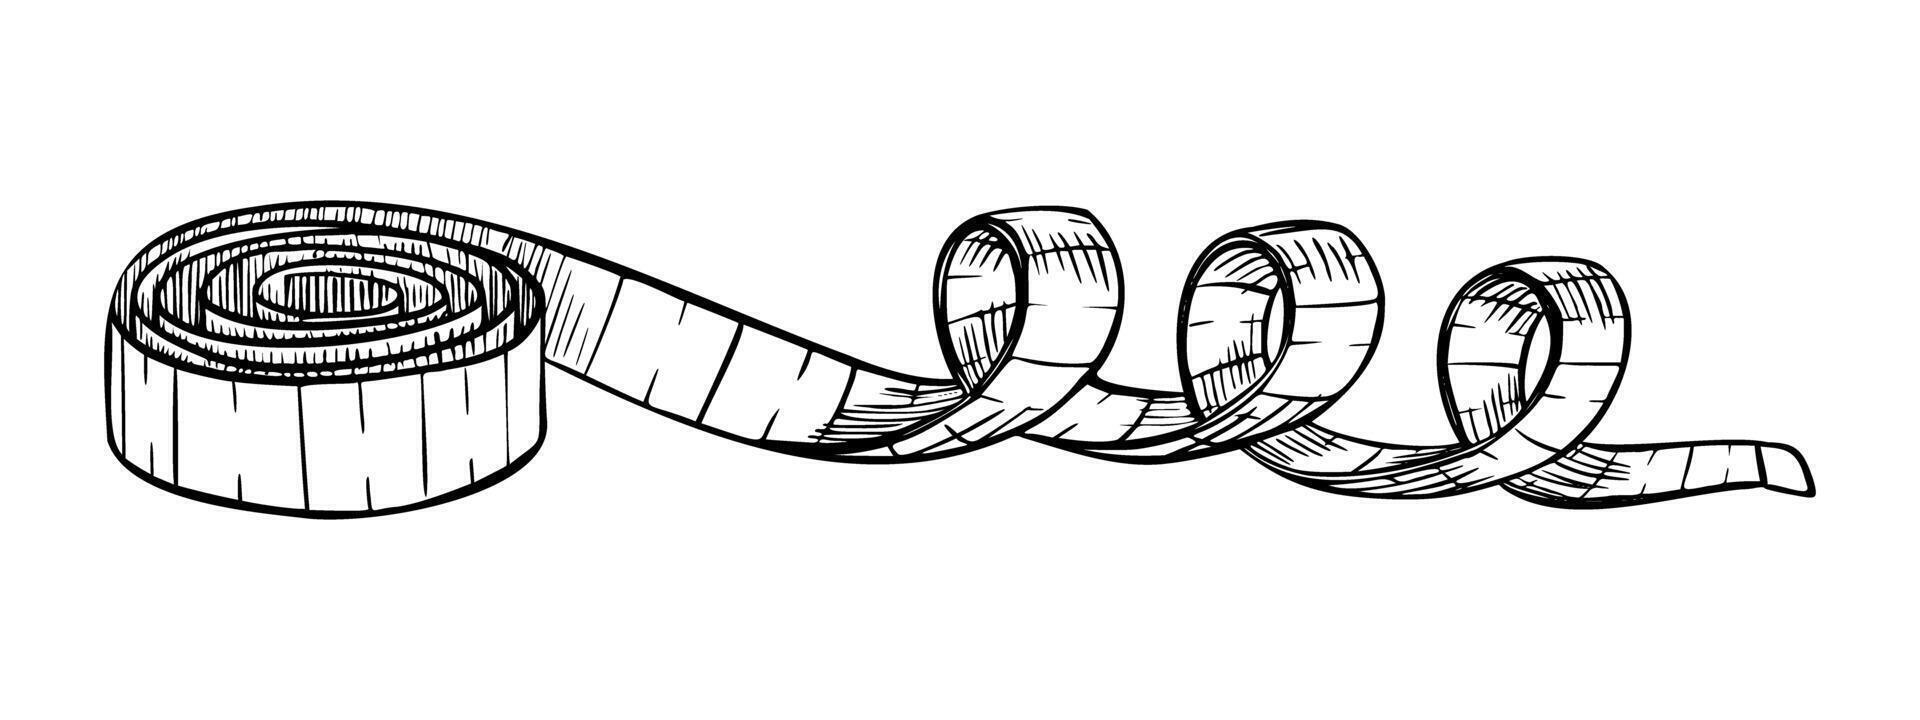 tejp mäta. illustration av centimeter på isolerat bakgrund. linjär teckning av Utrustning för skräddare målad förbi svart bläck. skiss kondition linjal för mätning parameter vektor